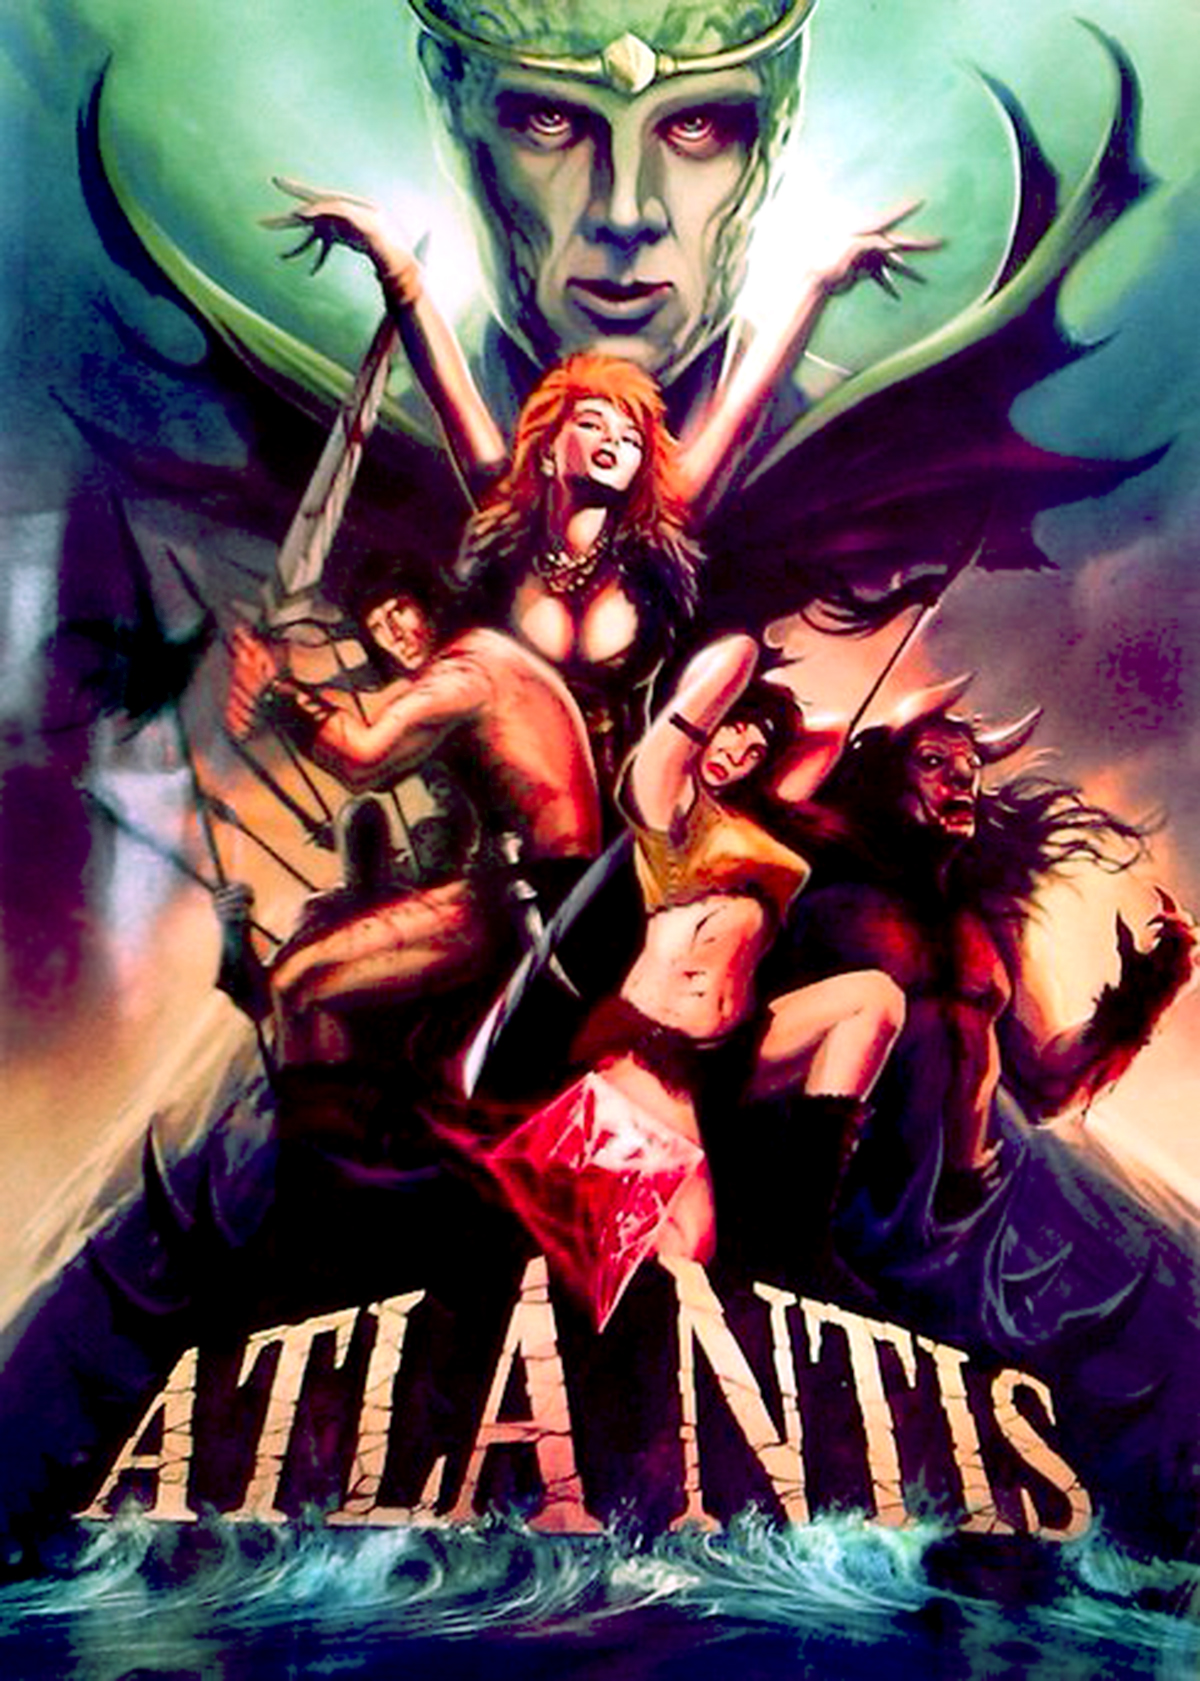 Atlantis (1991) Screenshot 2